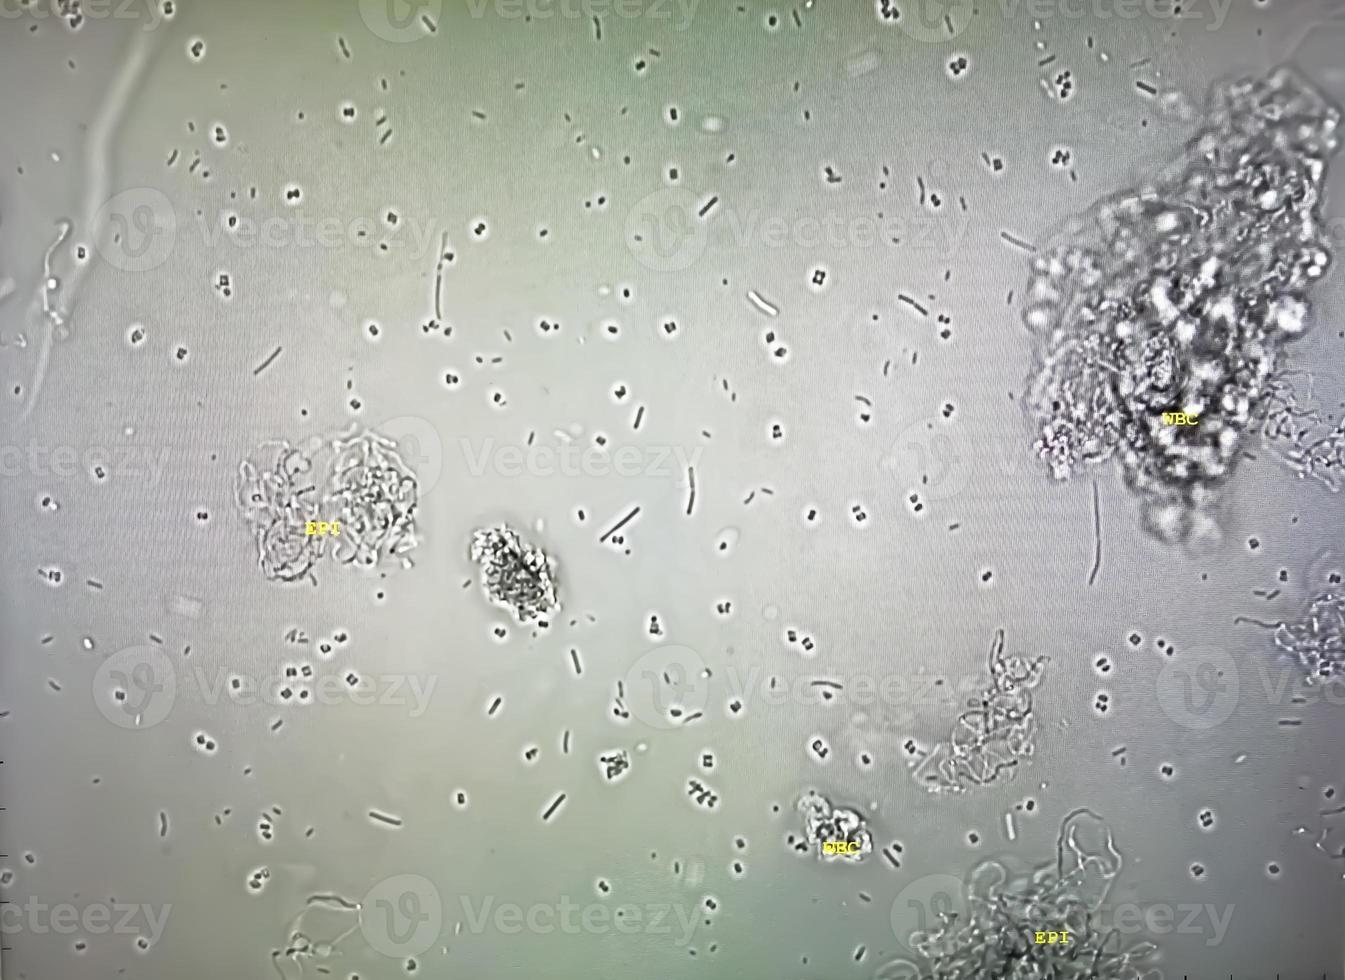 microscopico Immagine di anormale analisi delle urine. urina esame. urina routine visita medica. foto